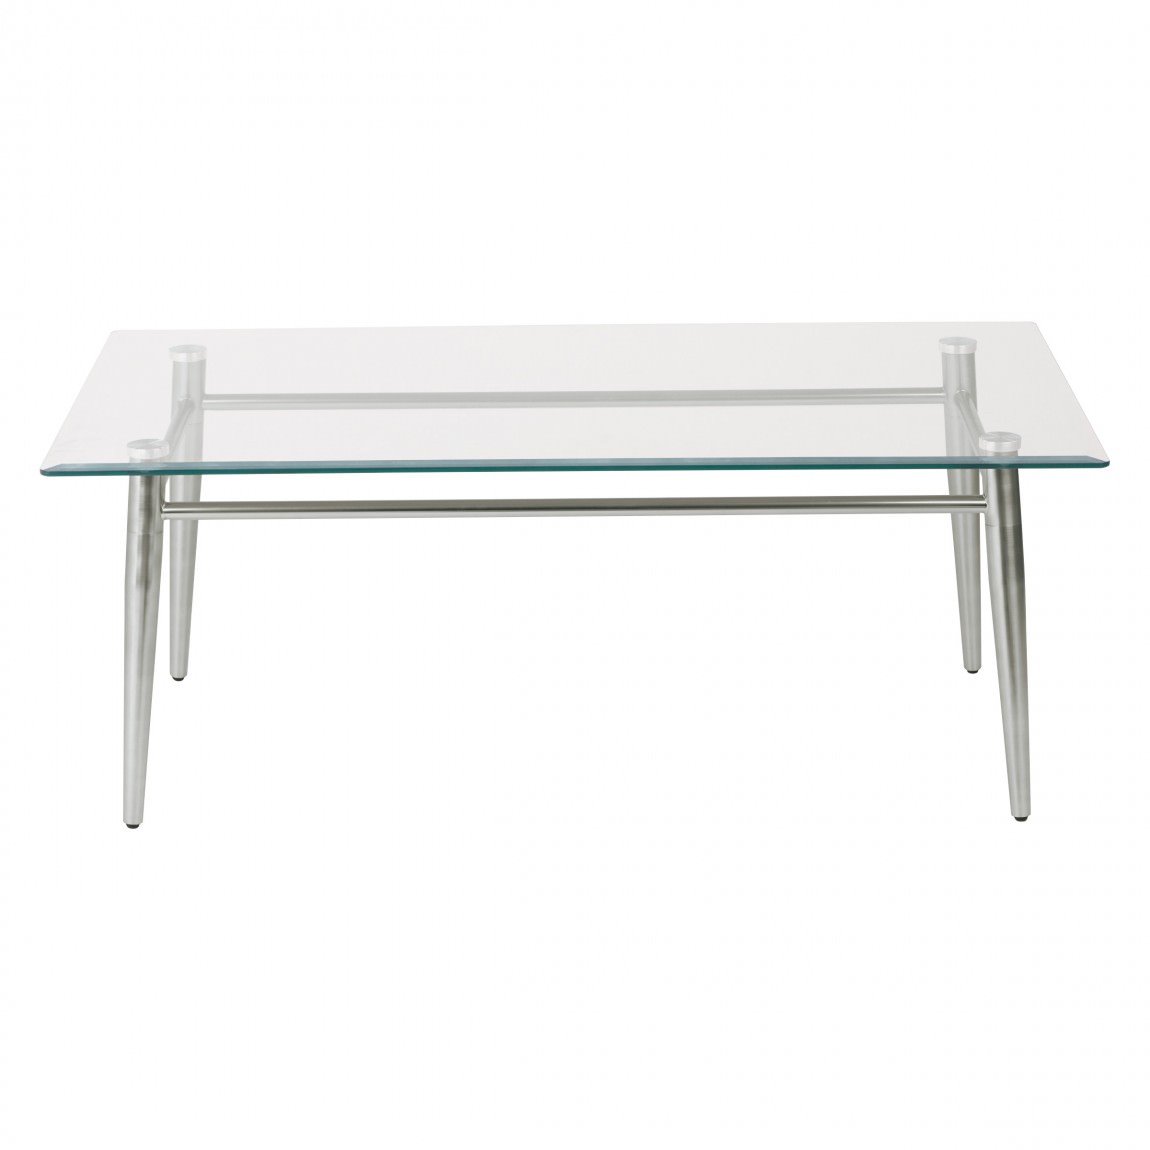 Rectangular Glass Top Table